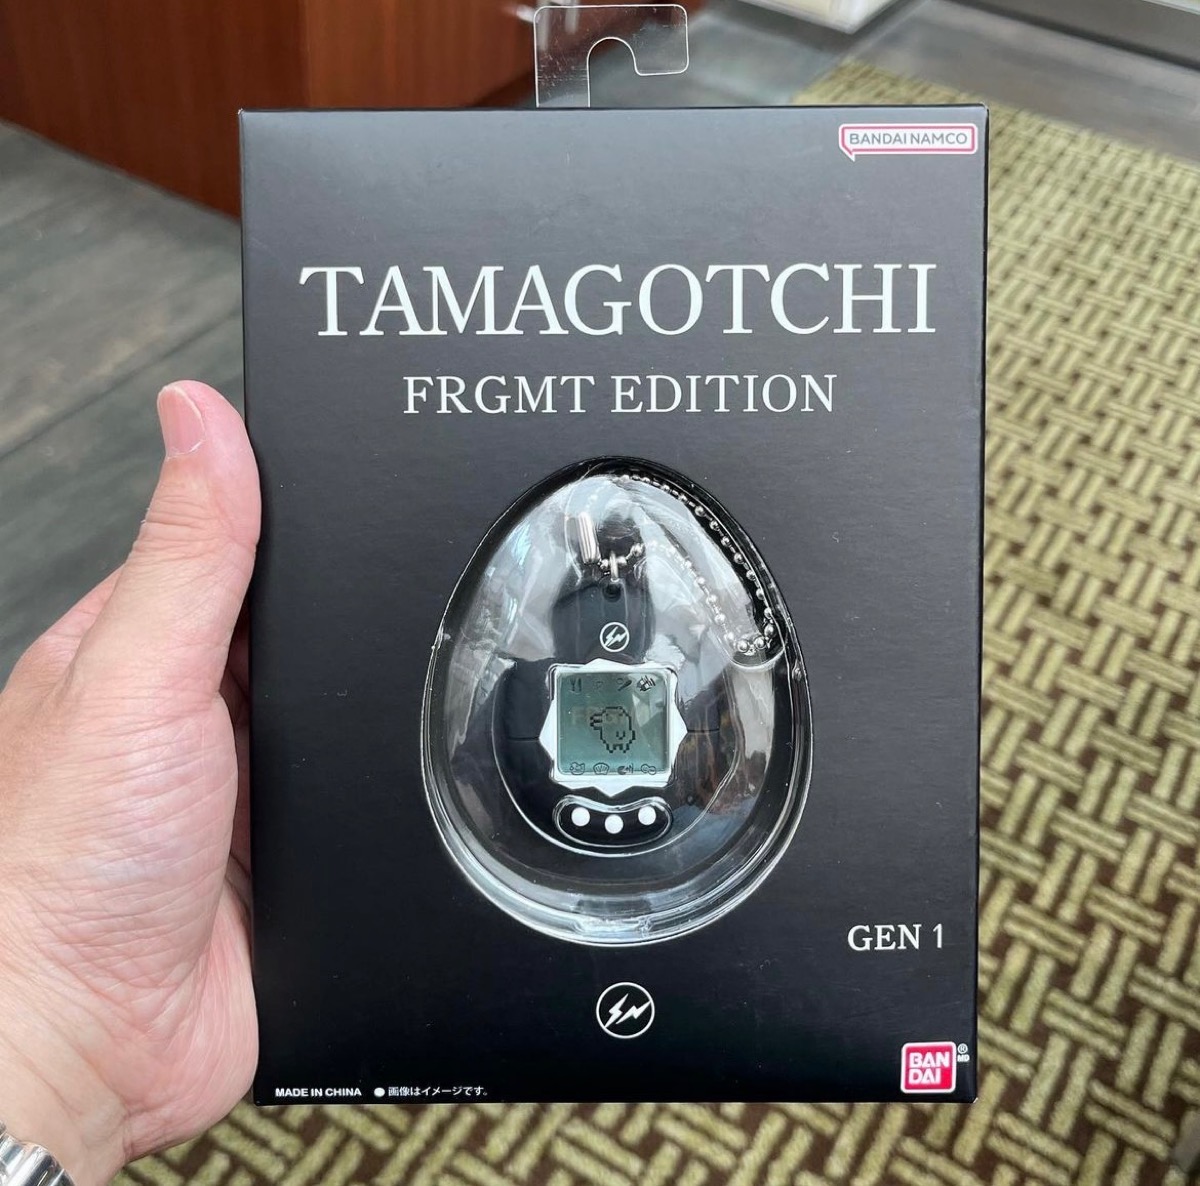 たまごっちフラグメント Tamagotchi fragment edition-